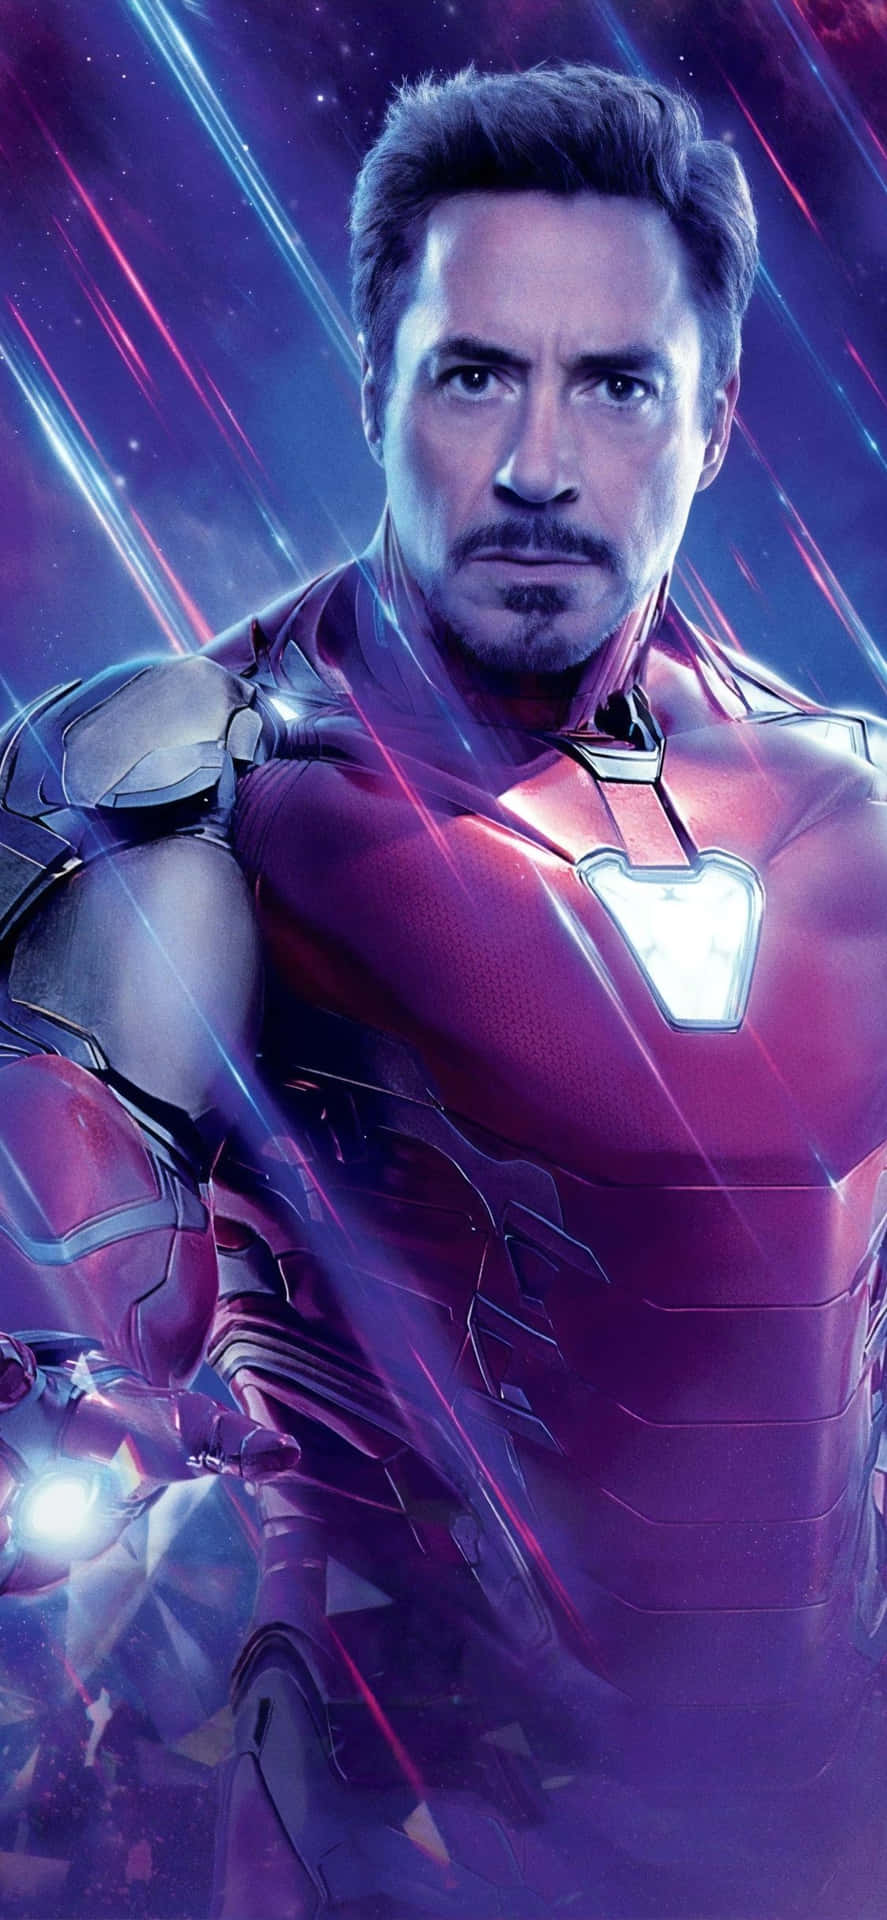 Blien Superhjälte Med Tony Starks Ikoniska Iron Man-mobilbakgrund På Iphone X. Wallpaper